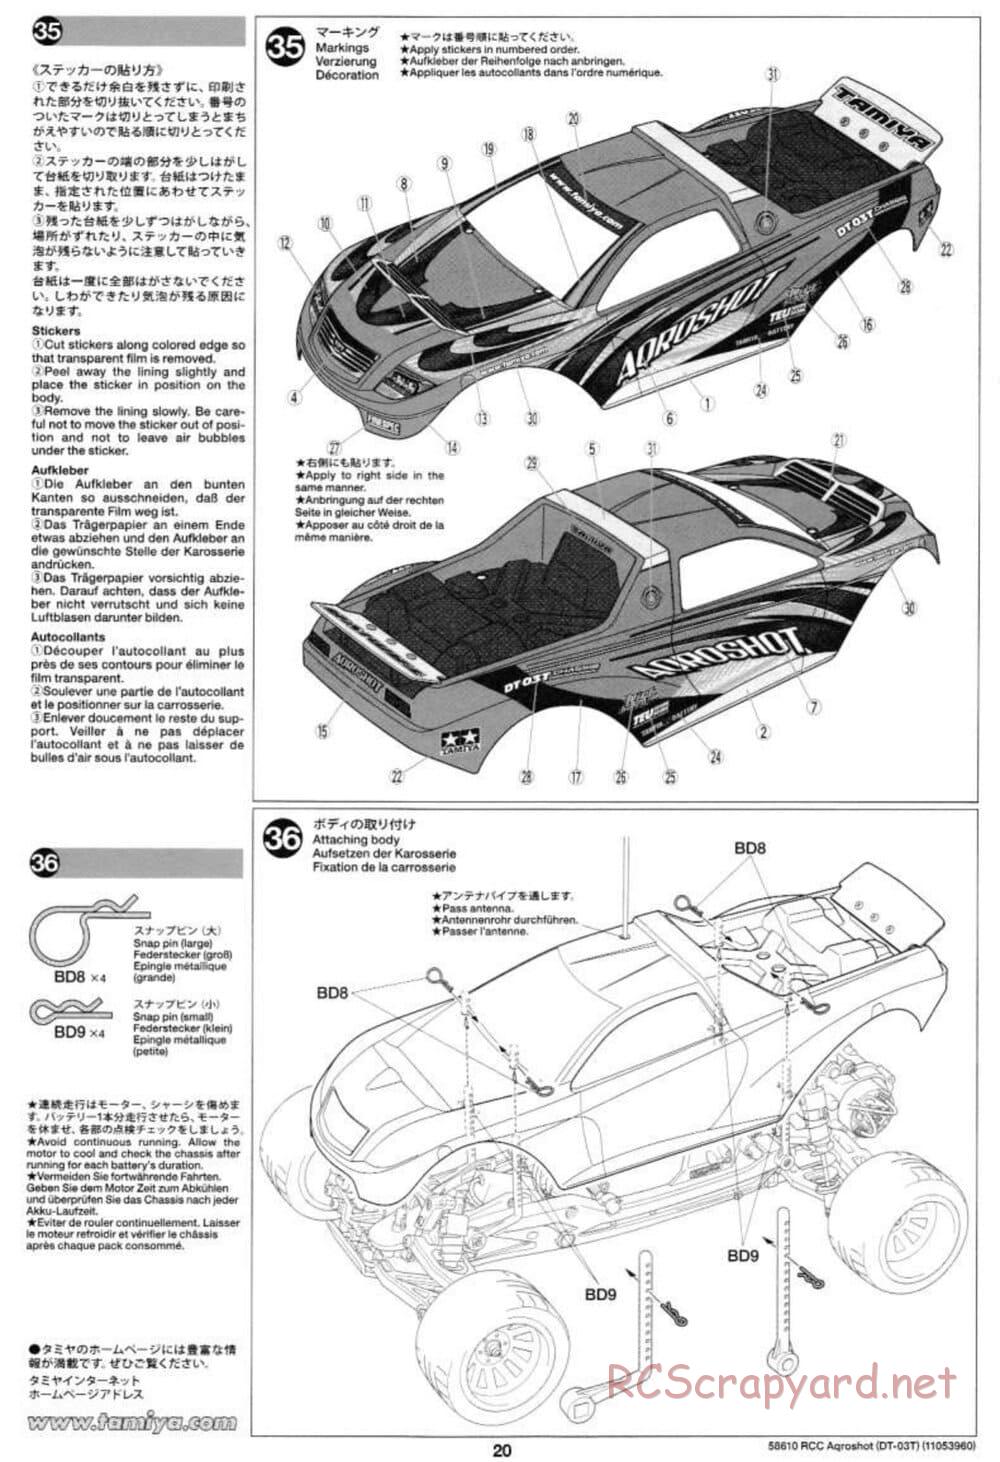 Tamiya - Aqroshot Chassis - Manual - Page 20